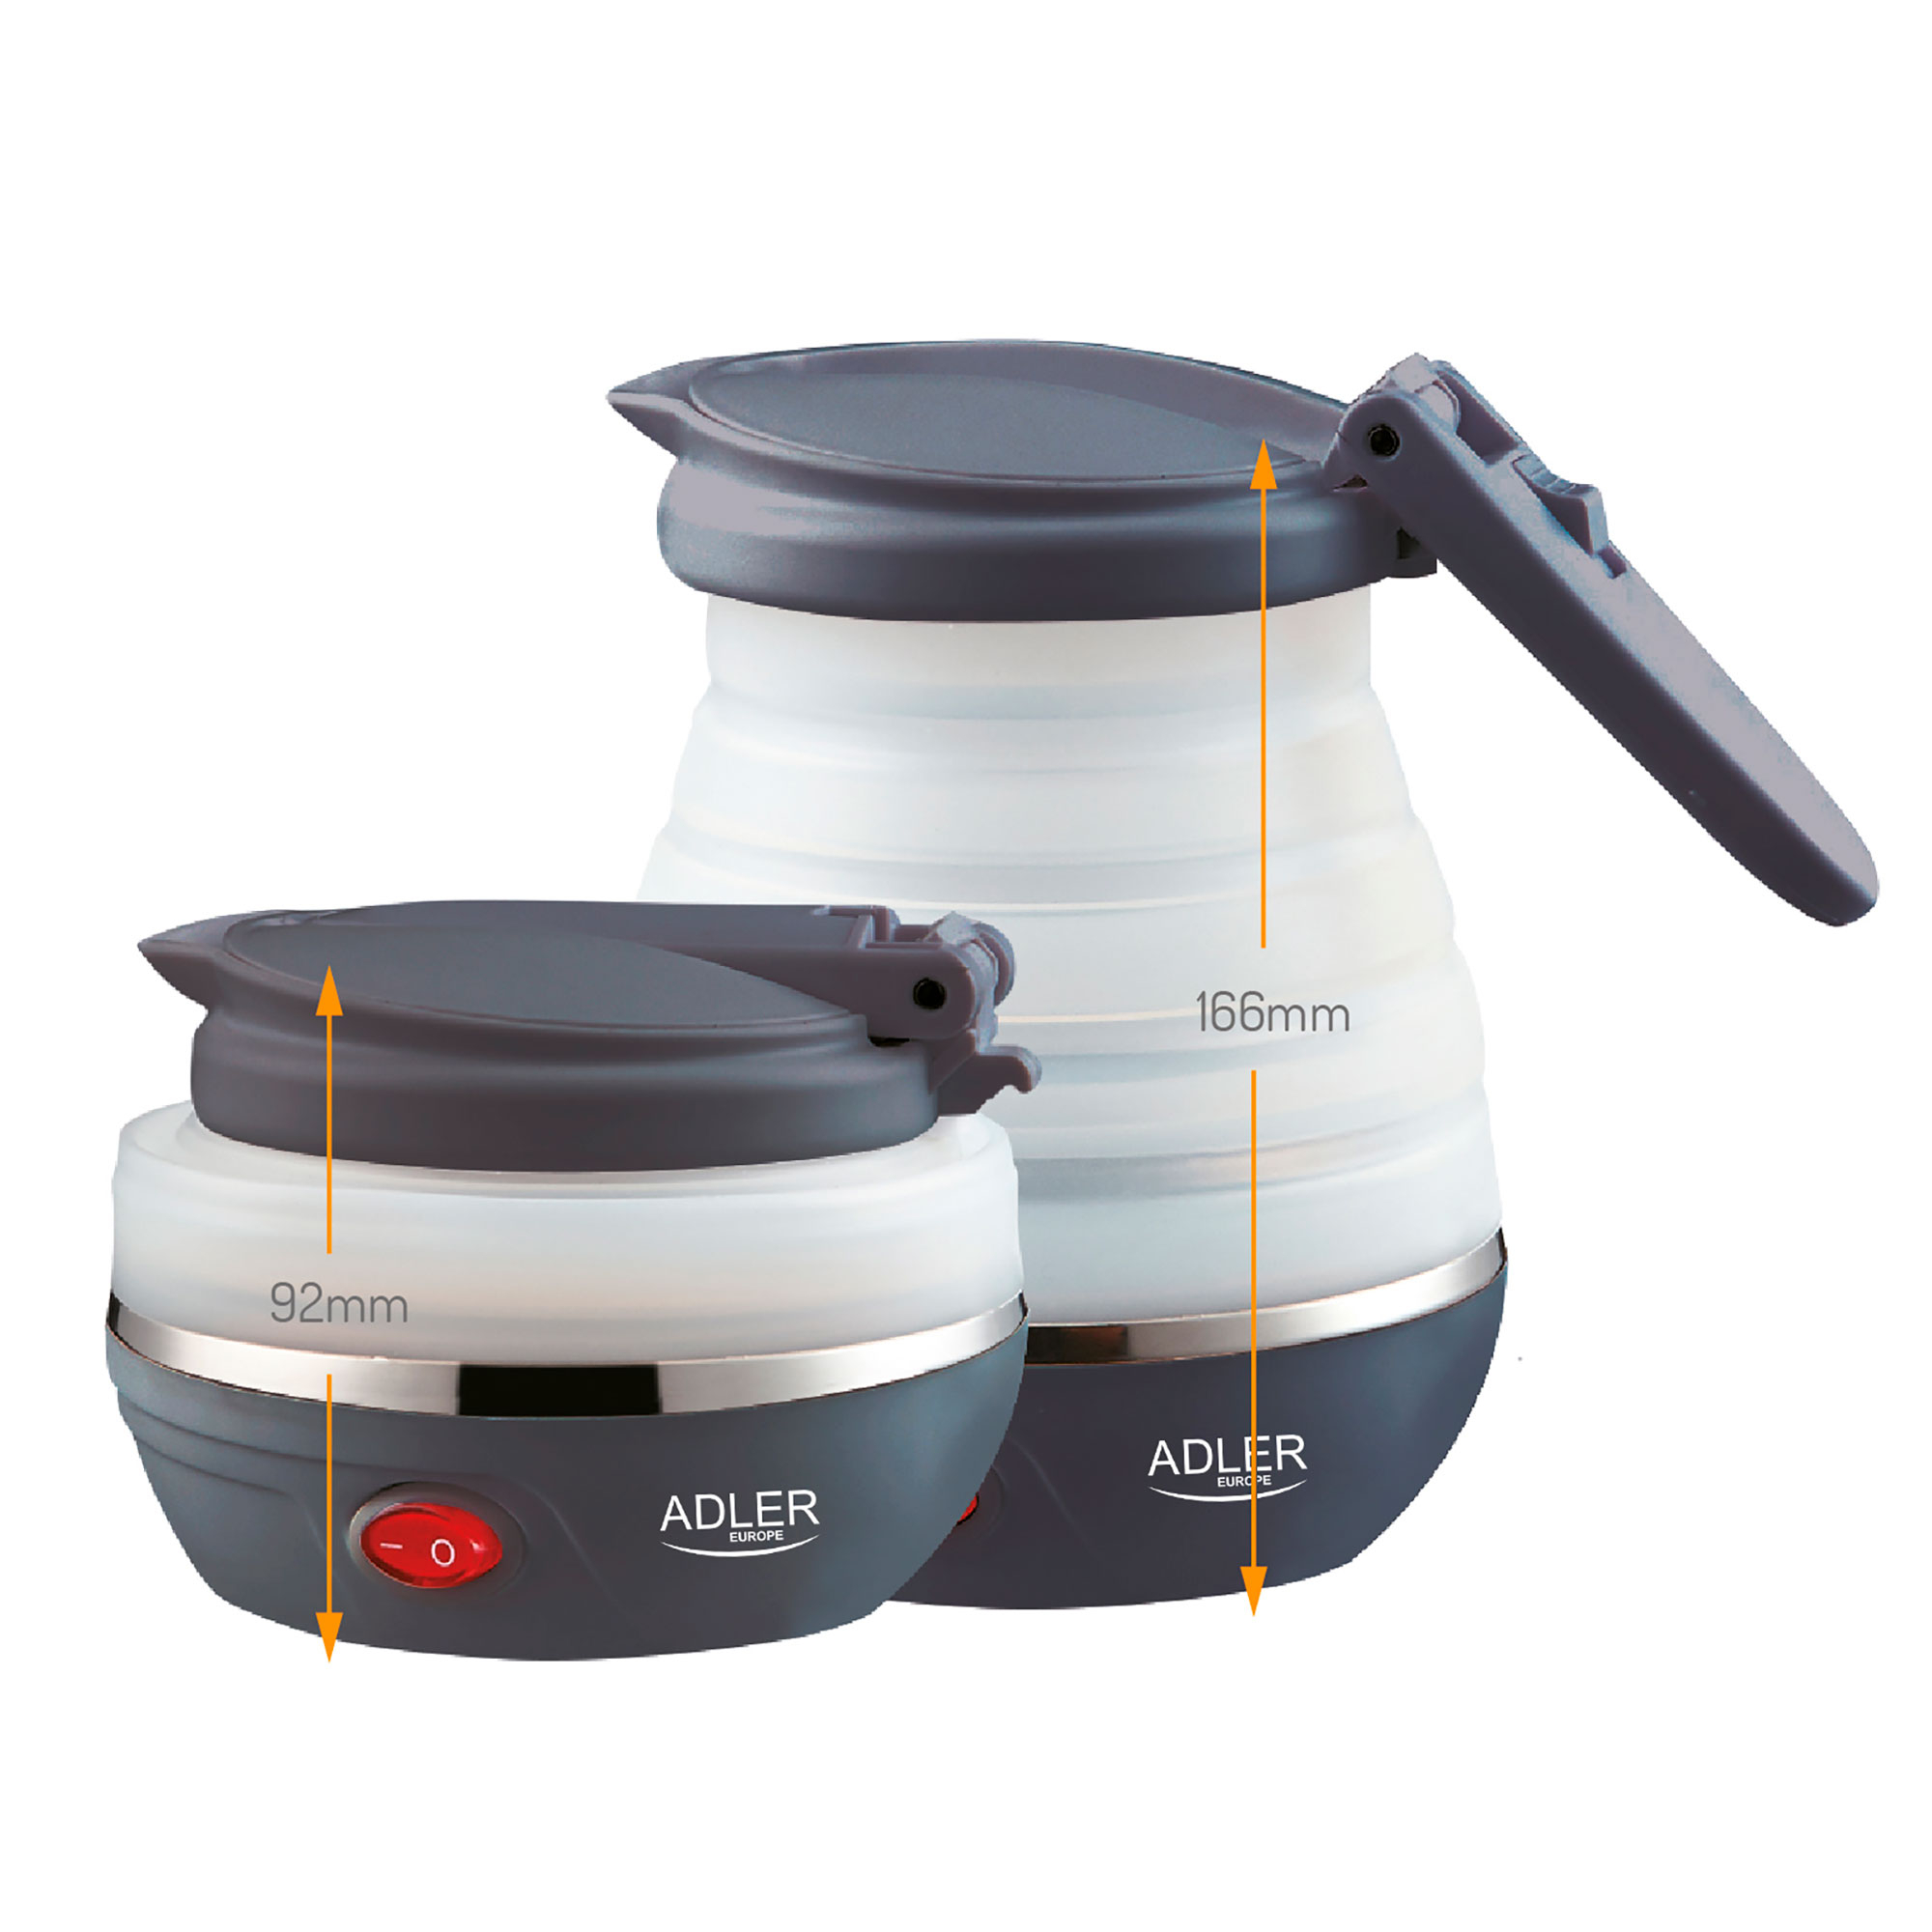 Adler AD1279 Hervidor de Agua Eléctrico Plegable, Resistencia Oculta, Tapa automatica, Silicona, 0,6 Litros, 750W, Libre de BPA, Blanco